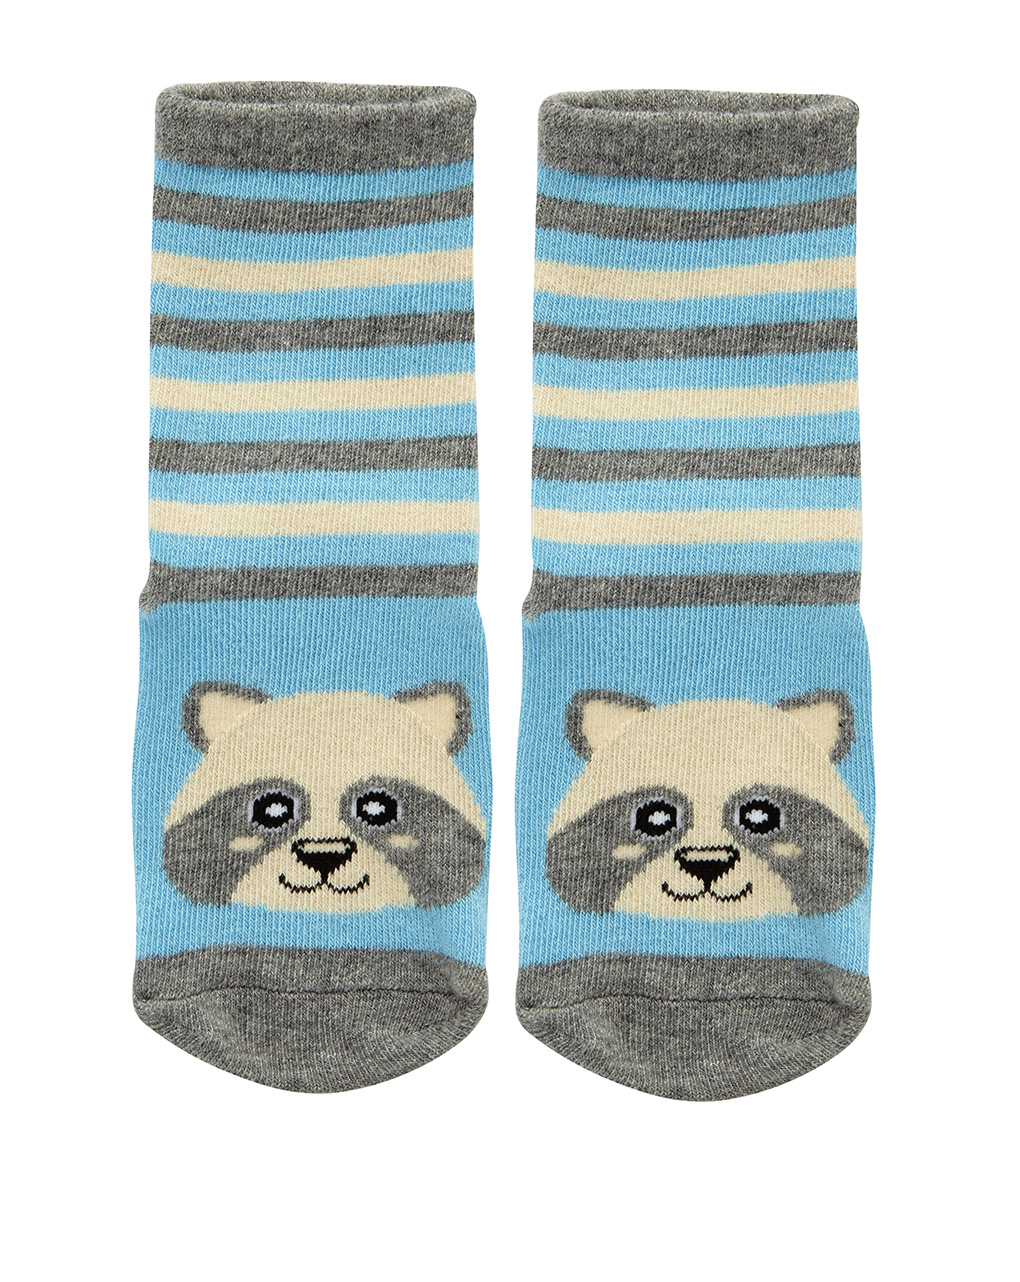 βρεφικές κάλτσες αντιολισθητικές με αρκουδάκι για αγόρι